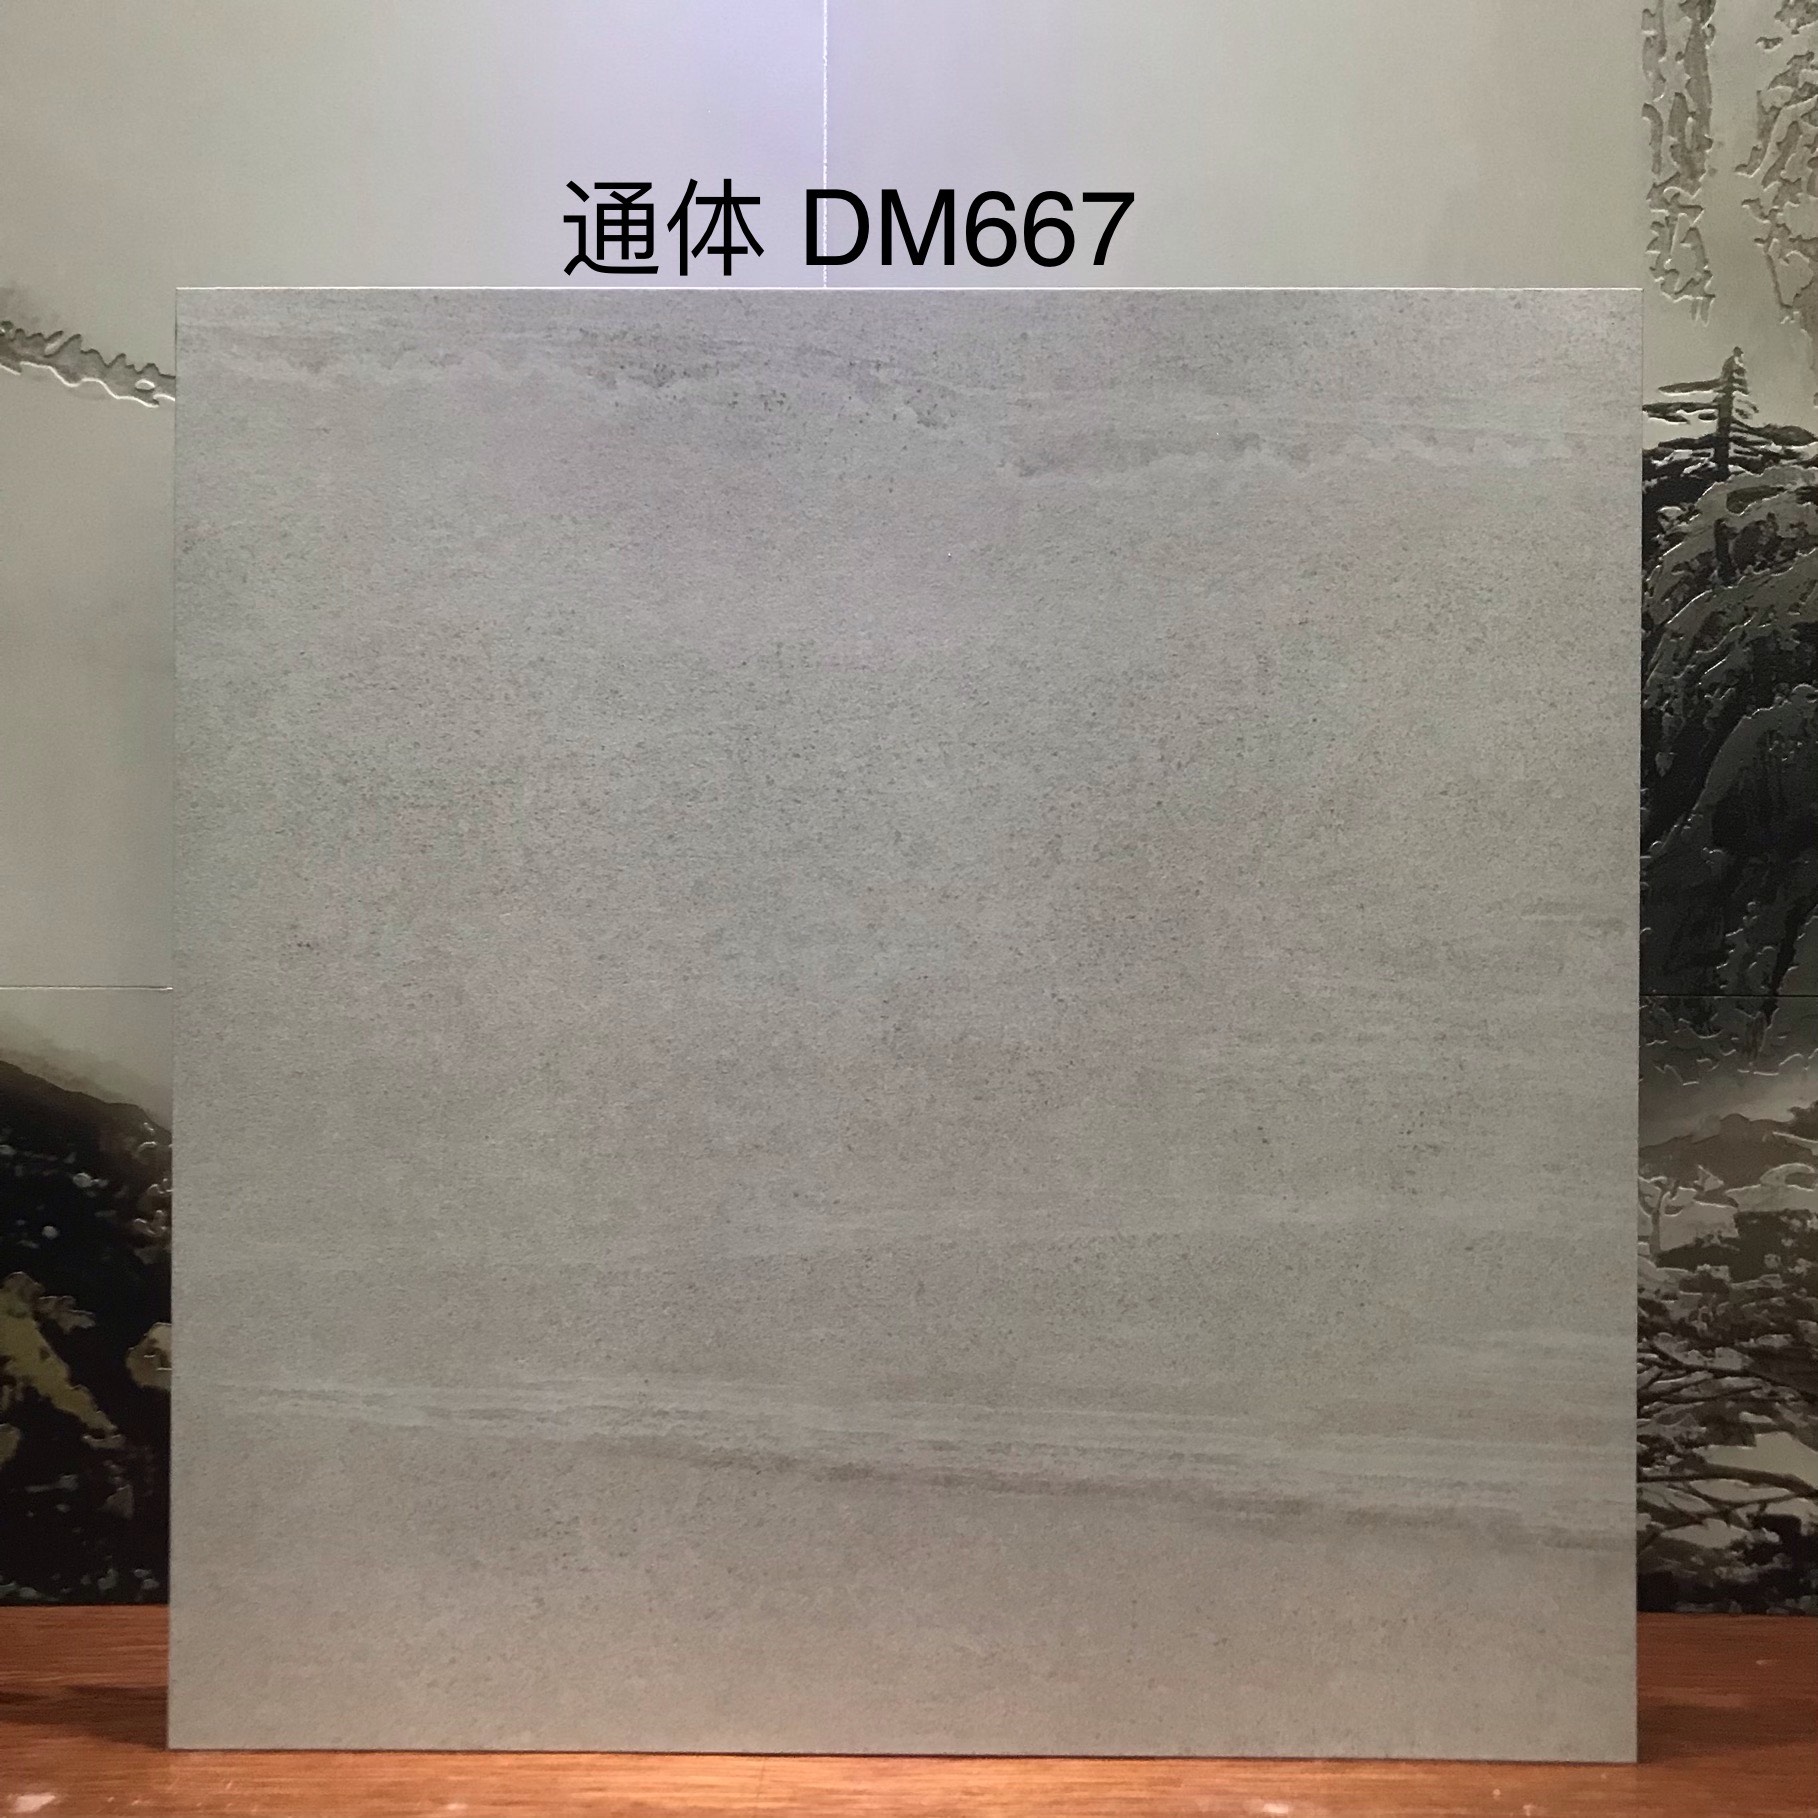 DM667